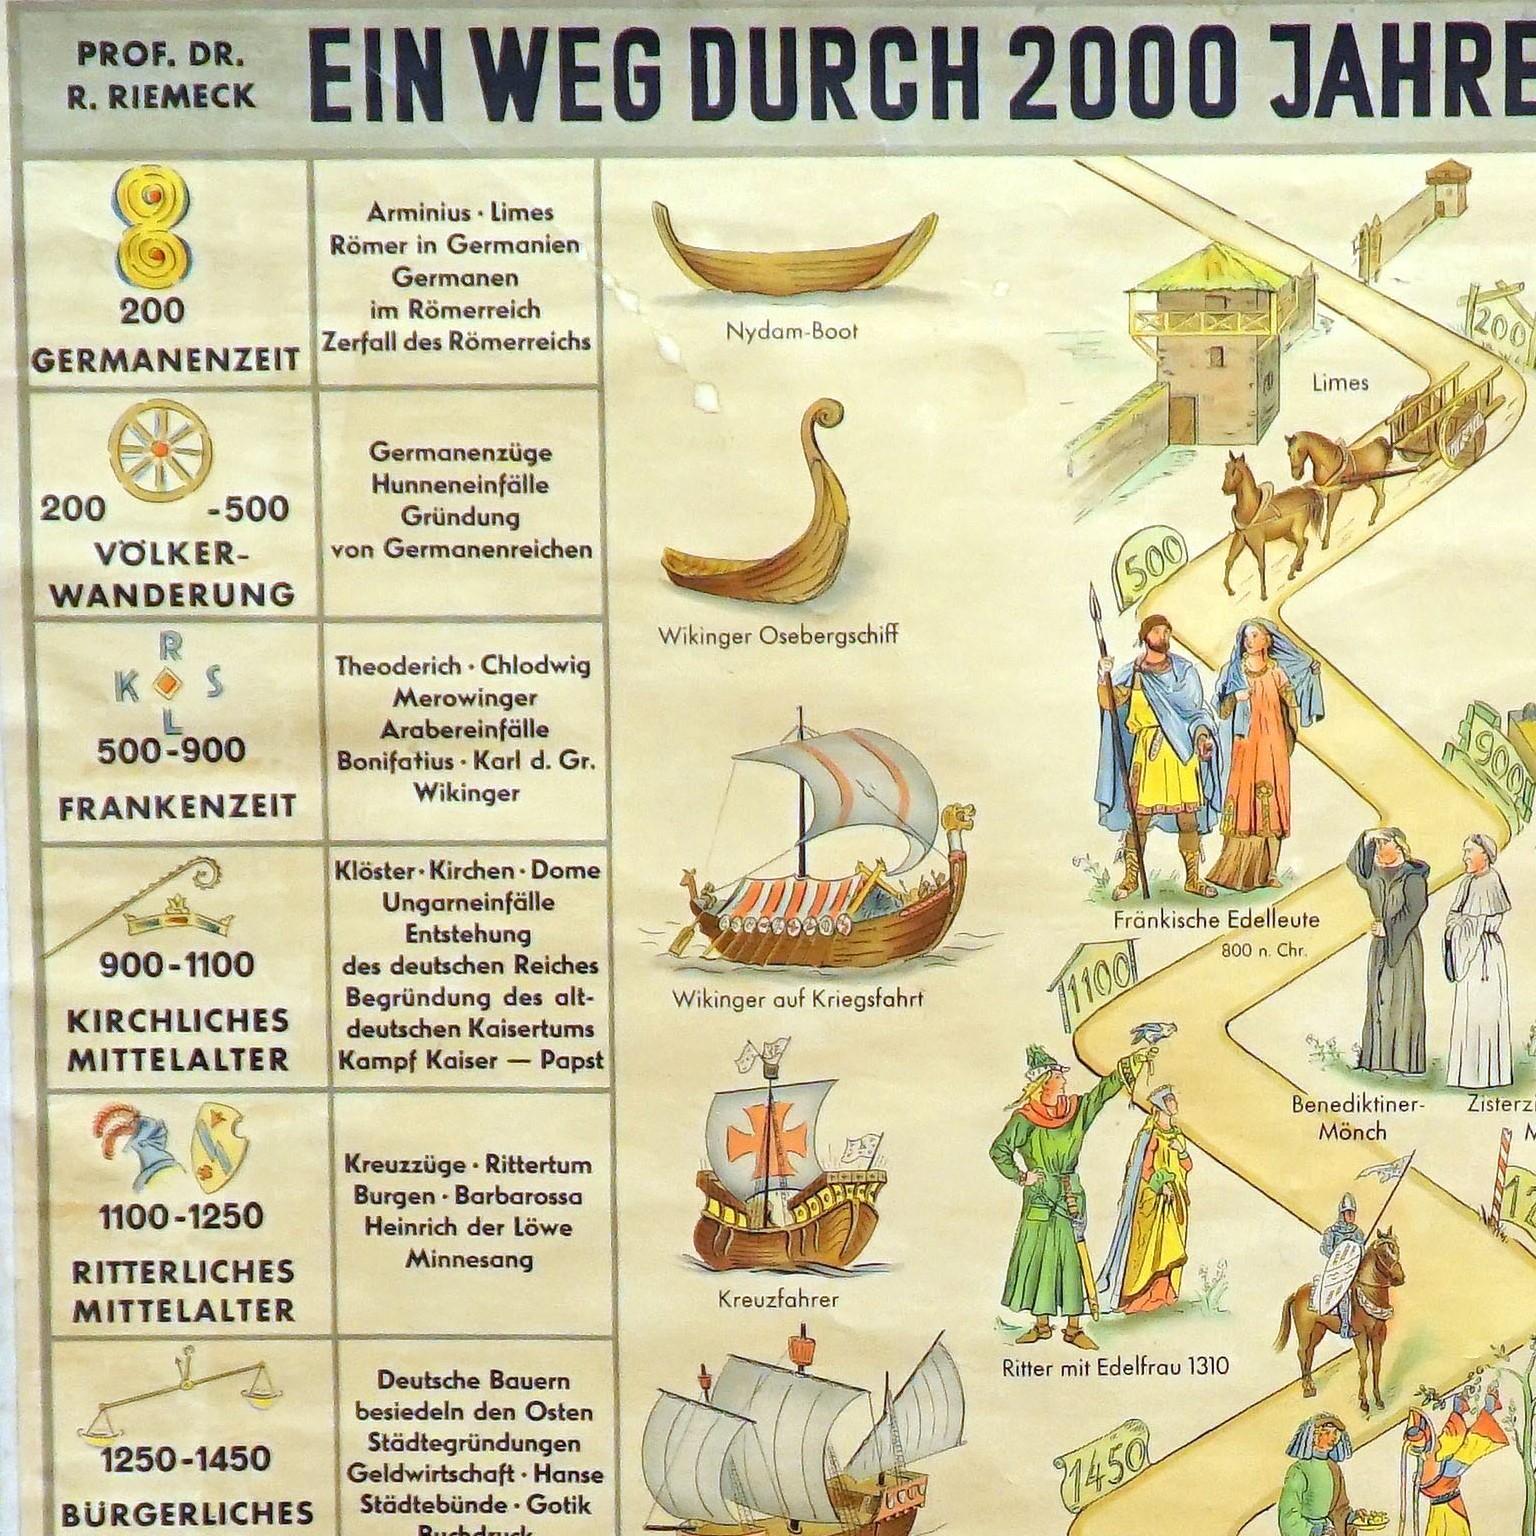 Eine klassische rollbare Wandtafel, die einen Weg durch 2000 Jahre Geschichte zeigt. Wird als Unterrichtsmaterial in deutschen Schulen verwendet. Farbenfroher Druck auf mit Leinwand verstärktem Papier.

Abmessungen:
Breite 100 cm (39,37 Zoll)
Höhe